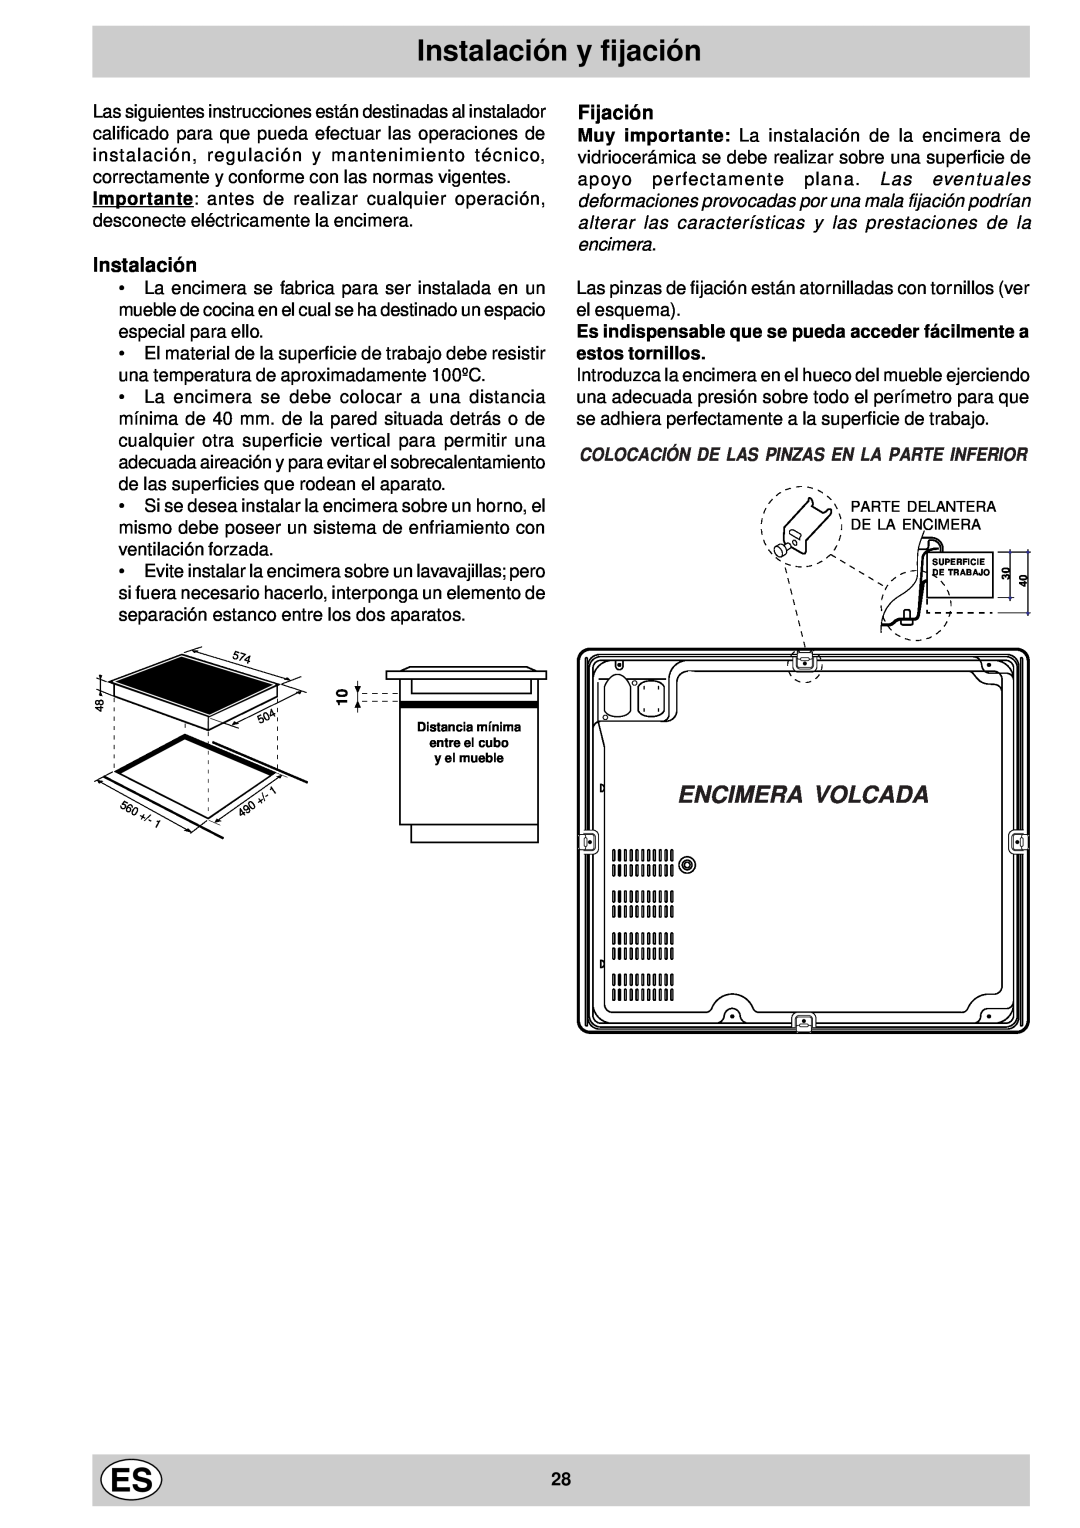 Indesit mk 64 r manual Instalación y fijación, Encimera Volcada, Fijación, Colocación De Las Pinzas En La Parte Inferior 